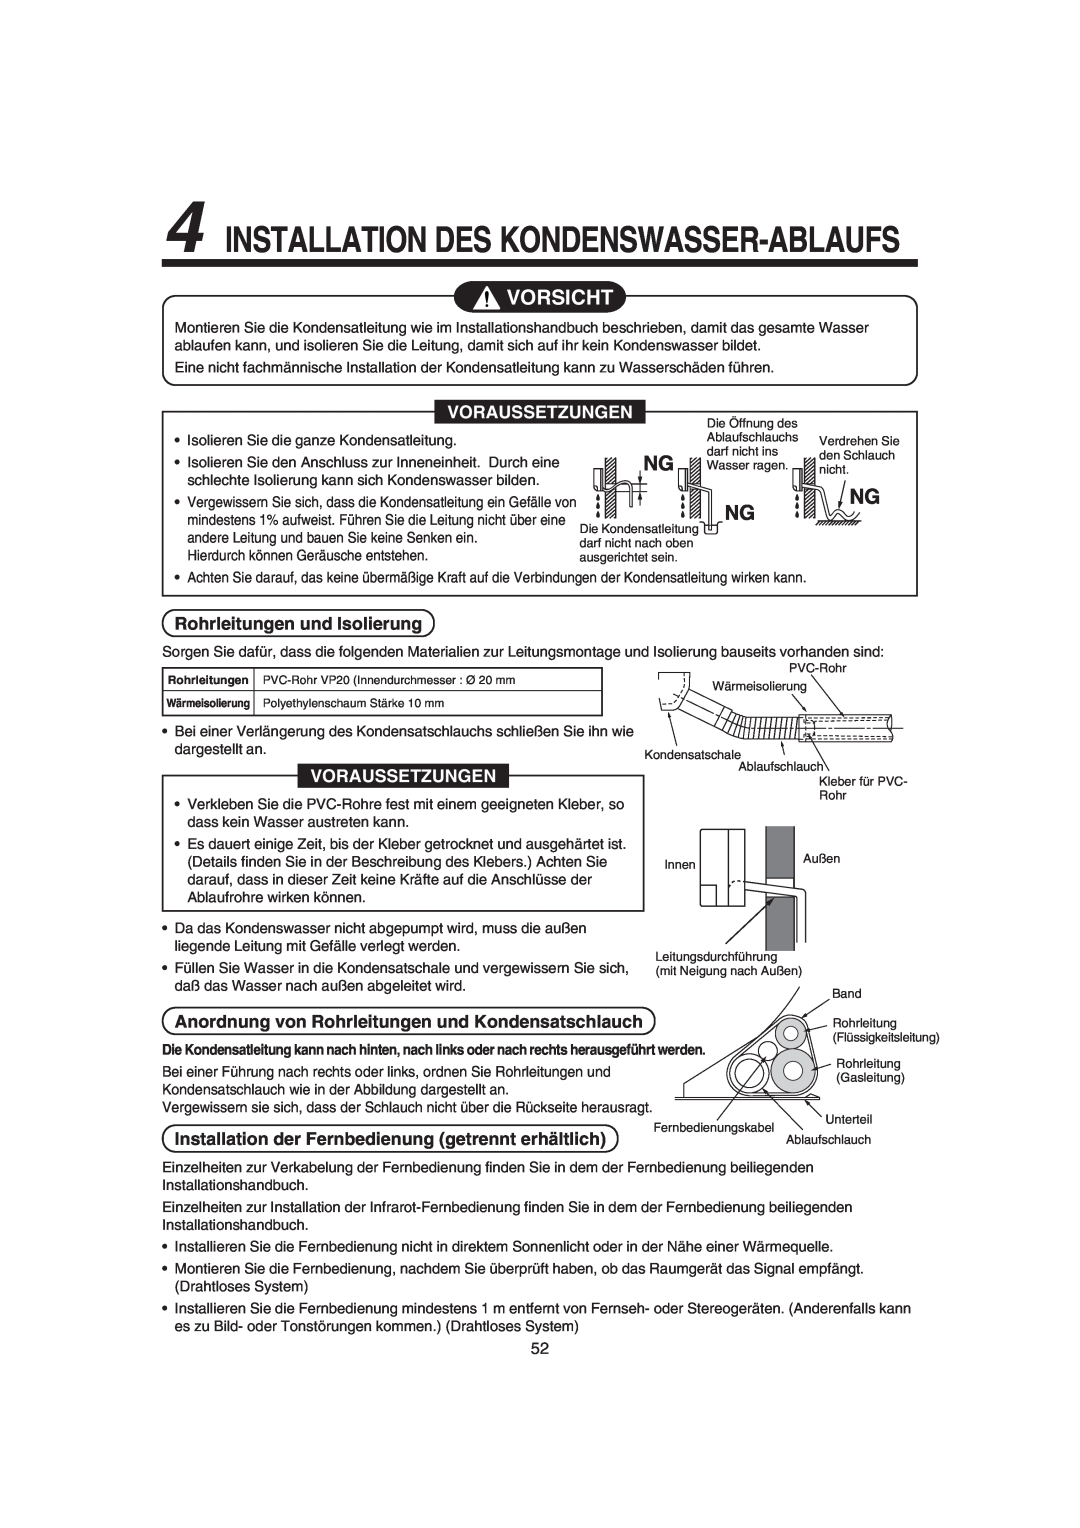 Pentax MMK-AP0181H, MMK-AP0121H Rohrleitungen und Isolierung, Anordnung von Rohrleitungen und Kondensatschlauch, Vorsicht 